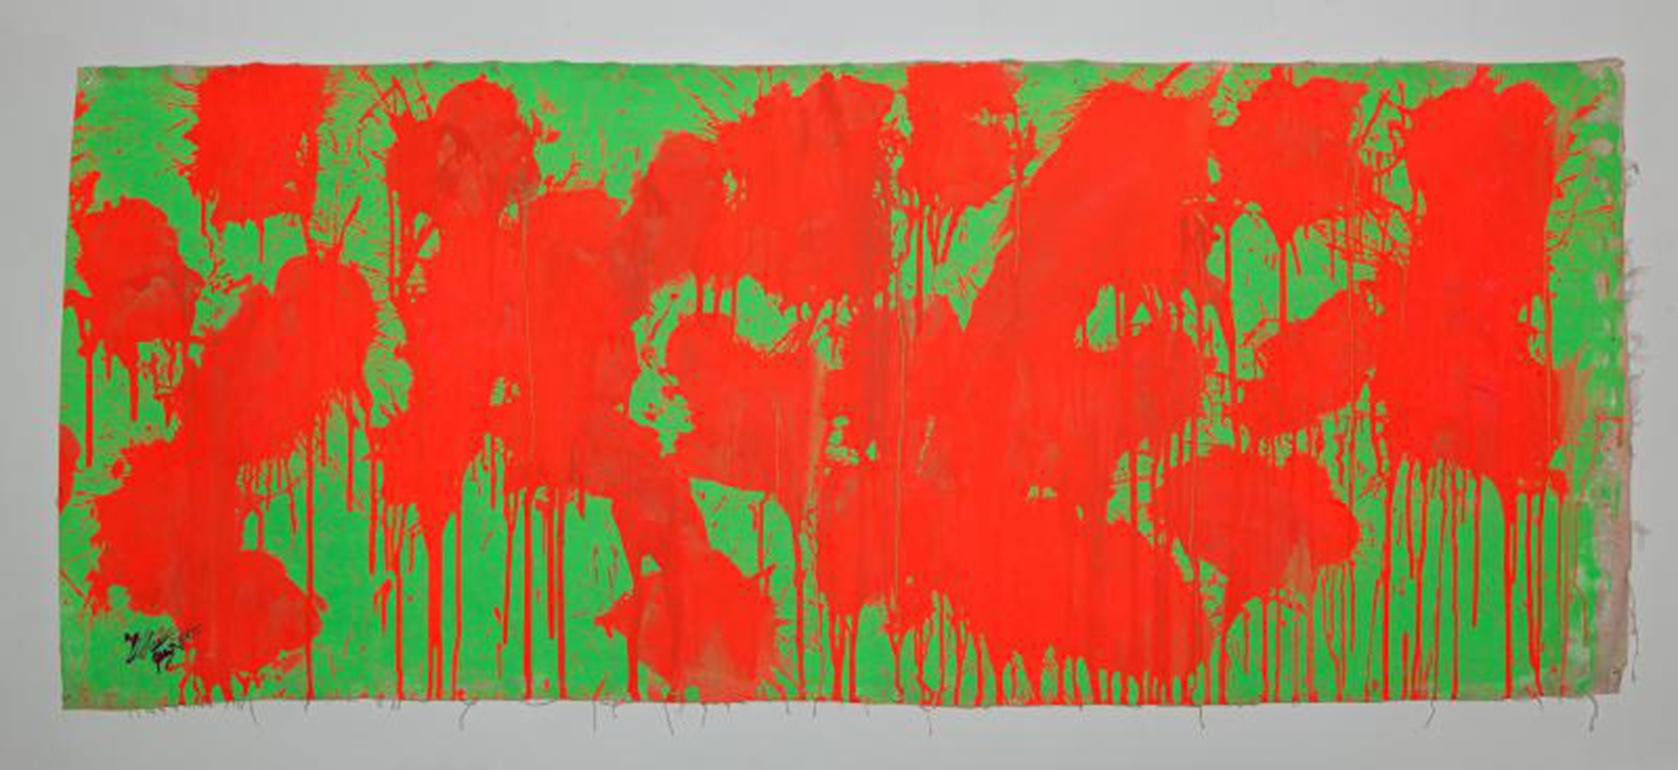 Abstract Painting Ushio Shinohara - ""Rouge sur vert - 28 mai 2009"" Acrylique sur toile - Peinture abstraite de boxe